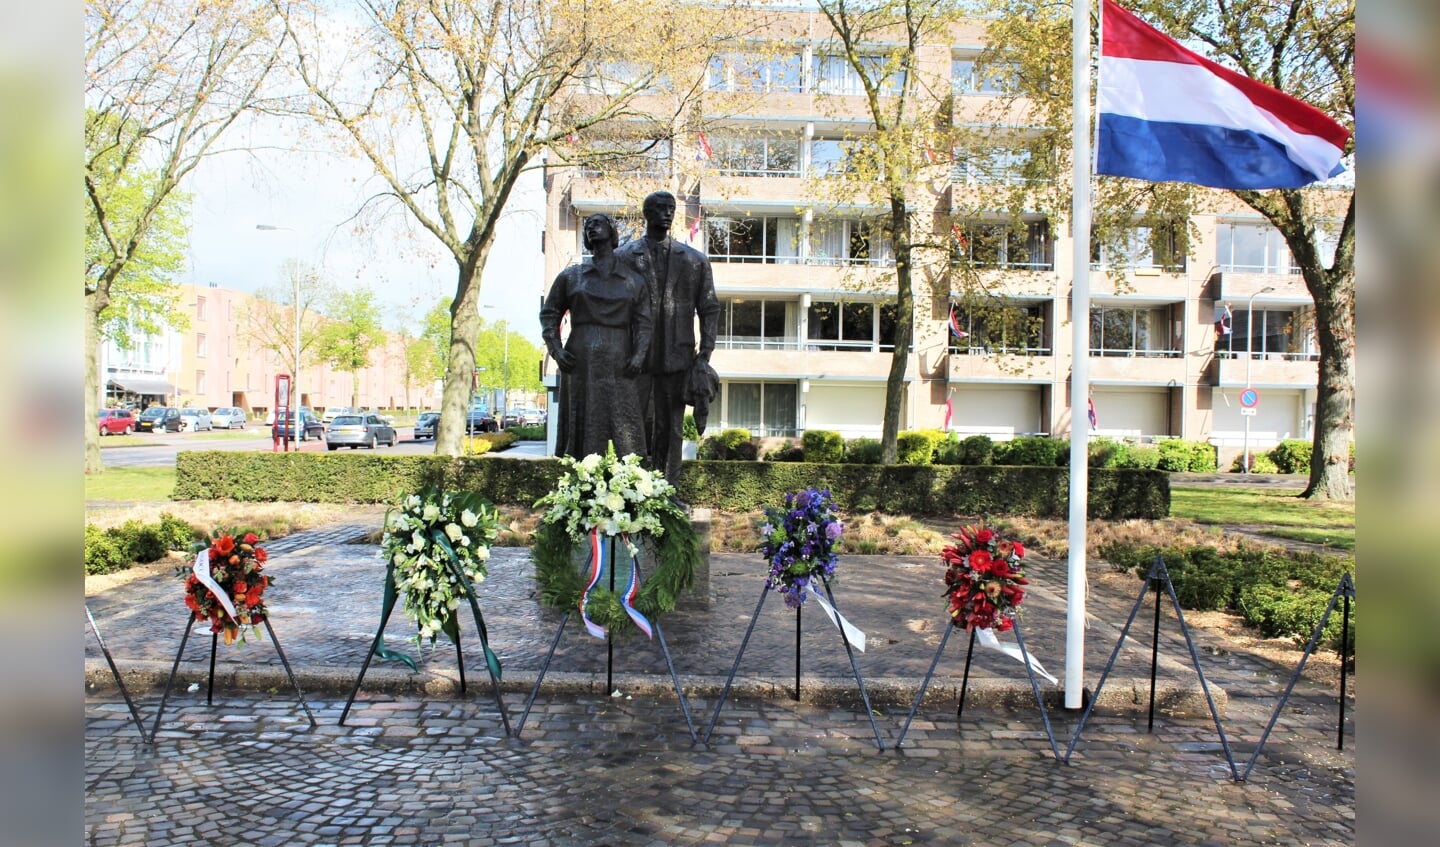 Ook veteranen hebben dinsdag tijdens dodenherdenking kransen gelegd bij het monument. (Foto: Harry Hoogenes)